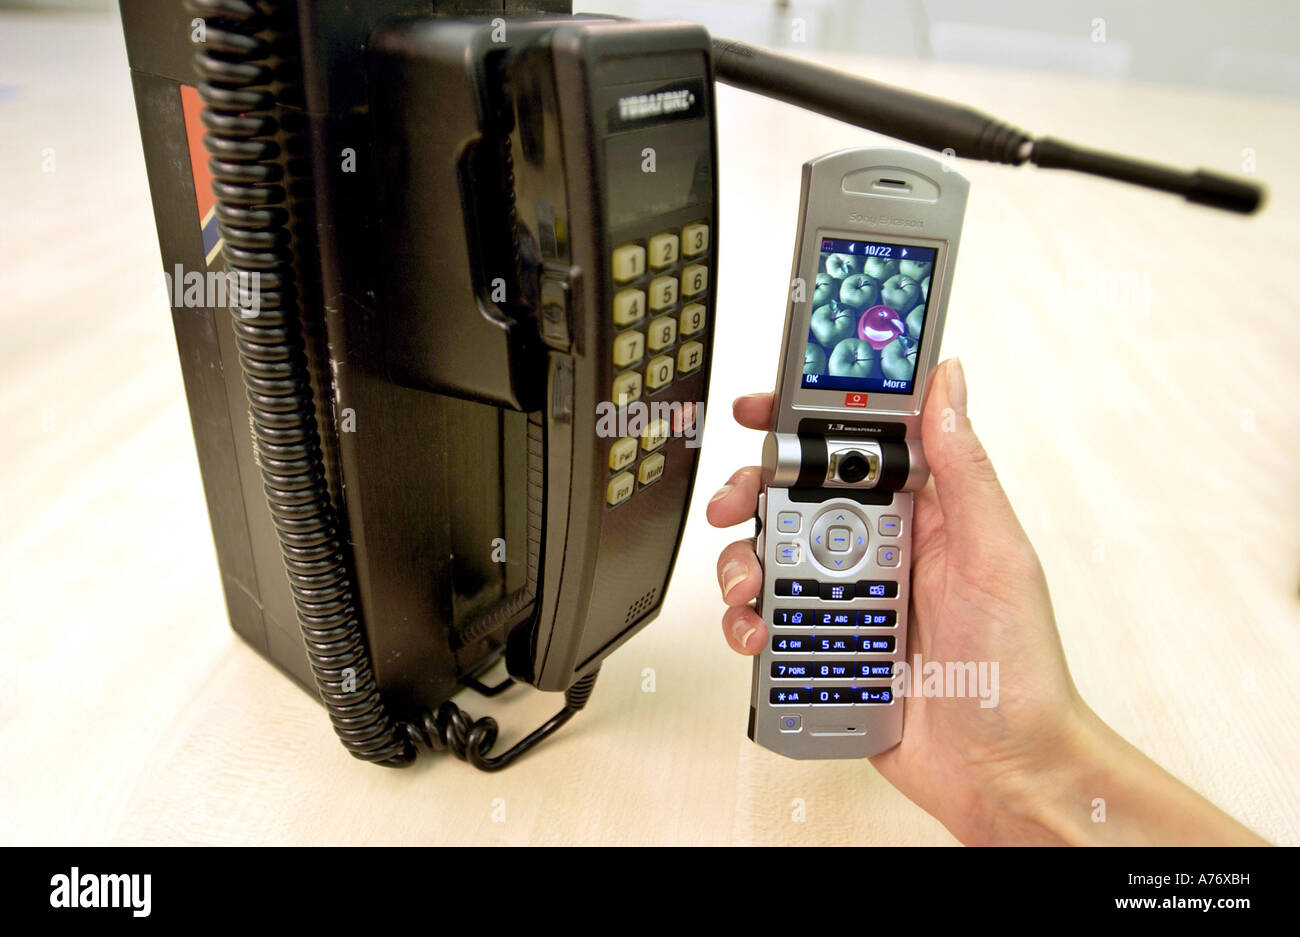 L'histoire des téléphones mobiles affichés avec un vieux modèle des années 80 et un 3G Vodafone. Banque D'Images